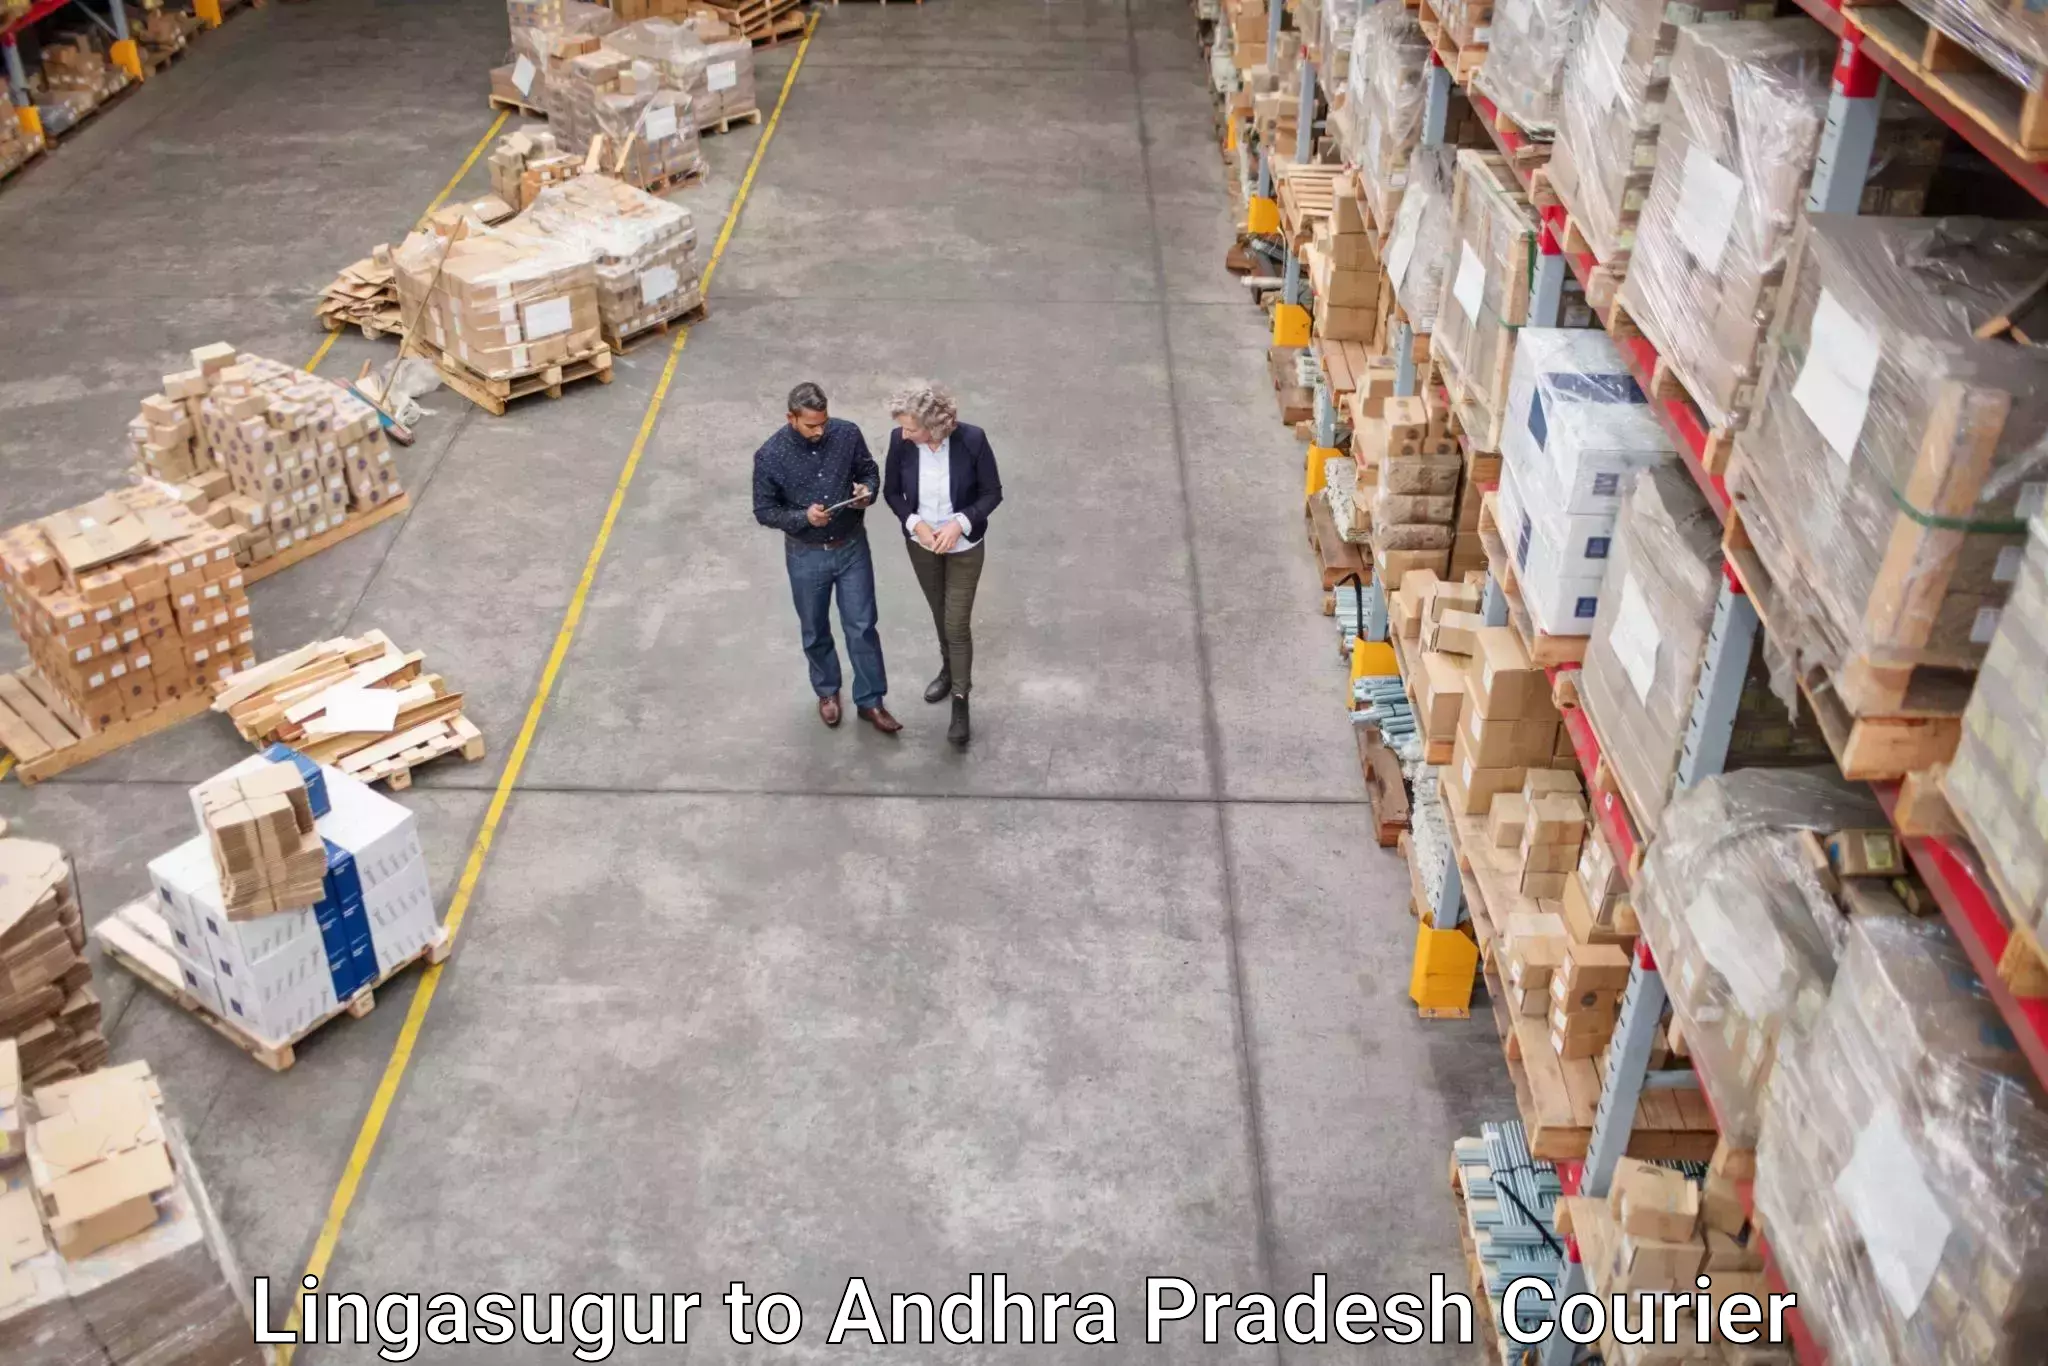 Reliable delivery network Lingasugur to Mulakalacheruvu